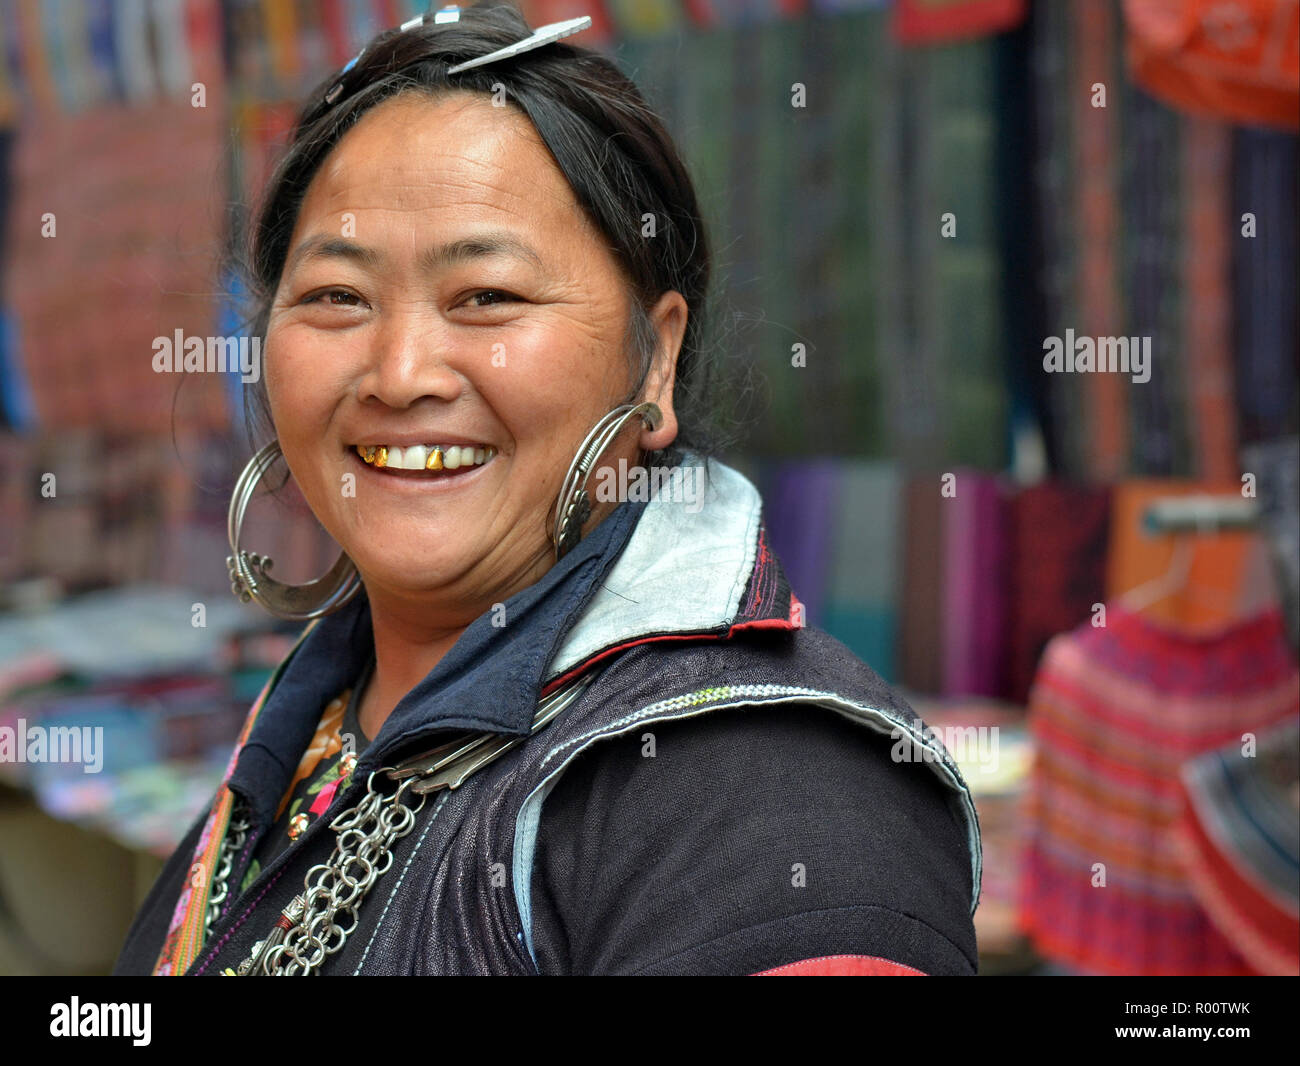 Full-gemustert, im mittleren Alter Vietnamesischen schwarzen H'mong Bergvolk Frau mit großen silbernen Ohrringe und drei Gold Zähnen Lächeln für die Kamera. Stockfoto